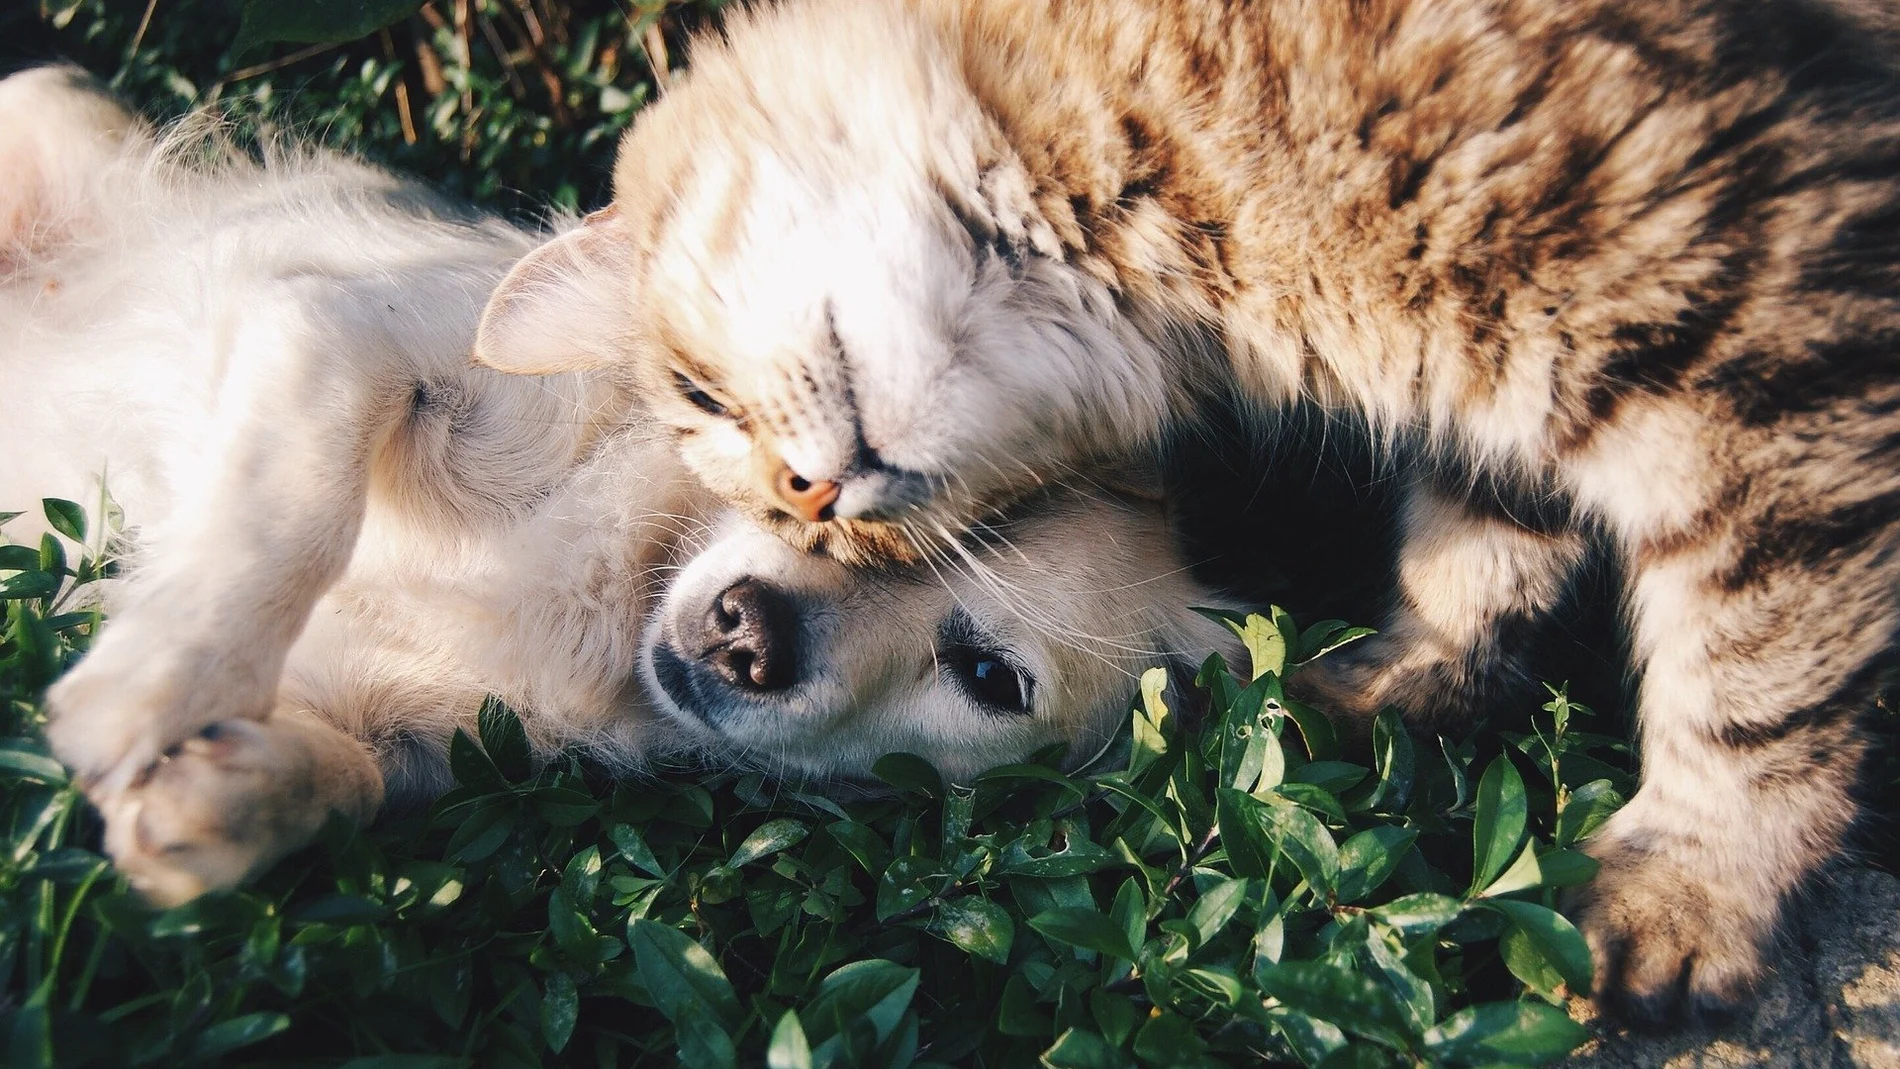 La nueva garantía, disponibles para las pólizas del Plan de Asistencia Familiar de la aseguradora, está dirigida a perros y gatos